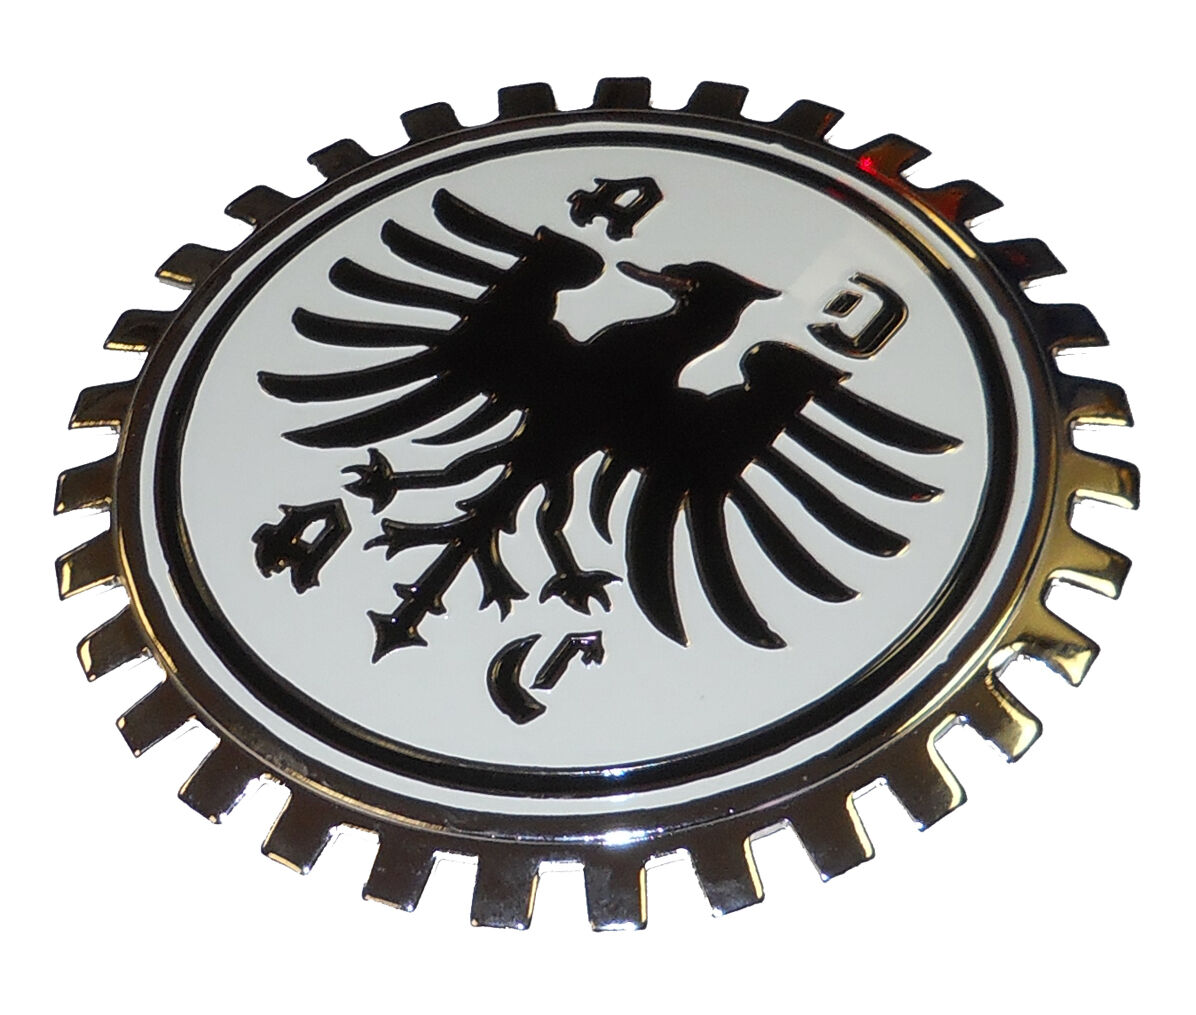 ADAC Car Club German grille badge